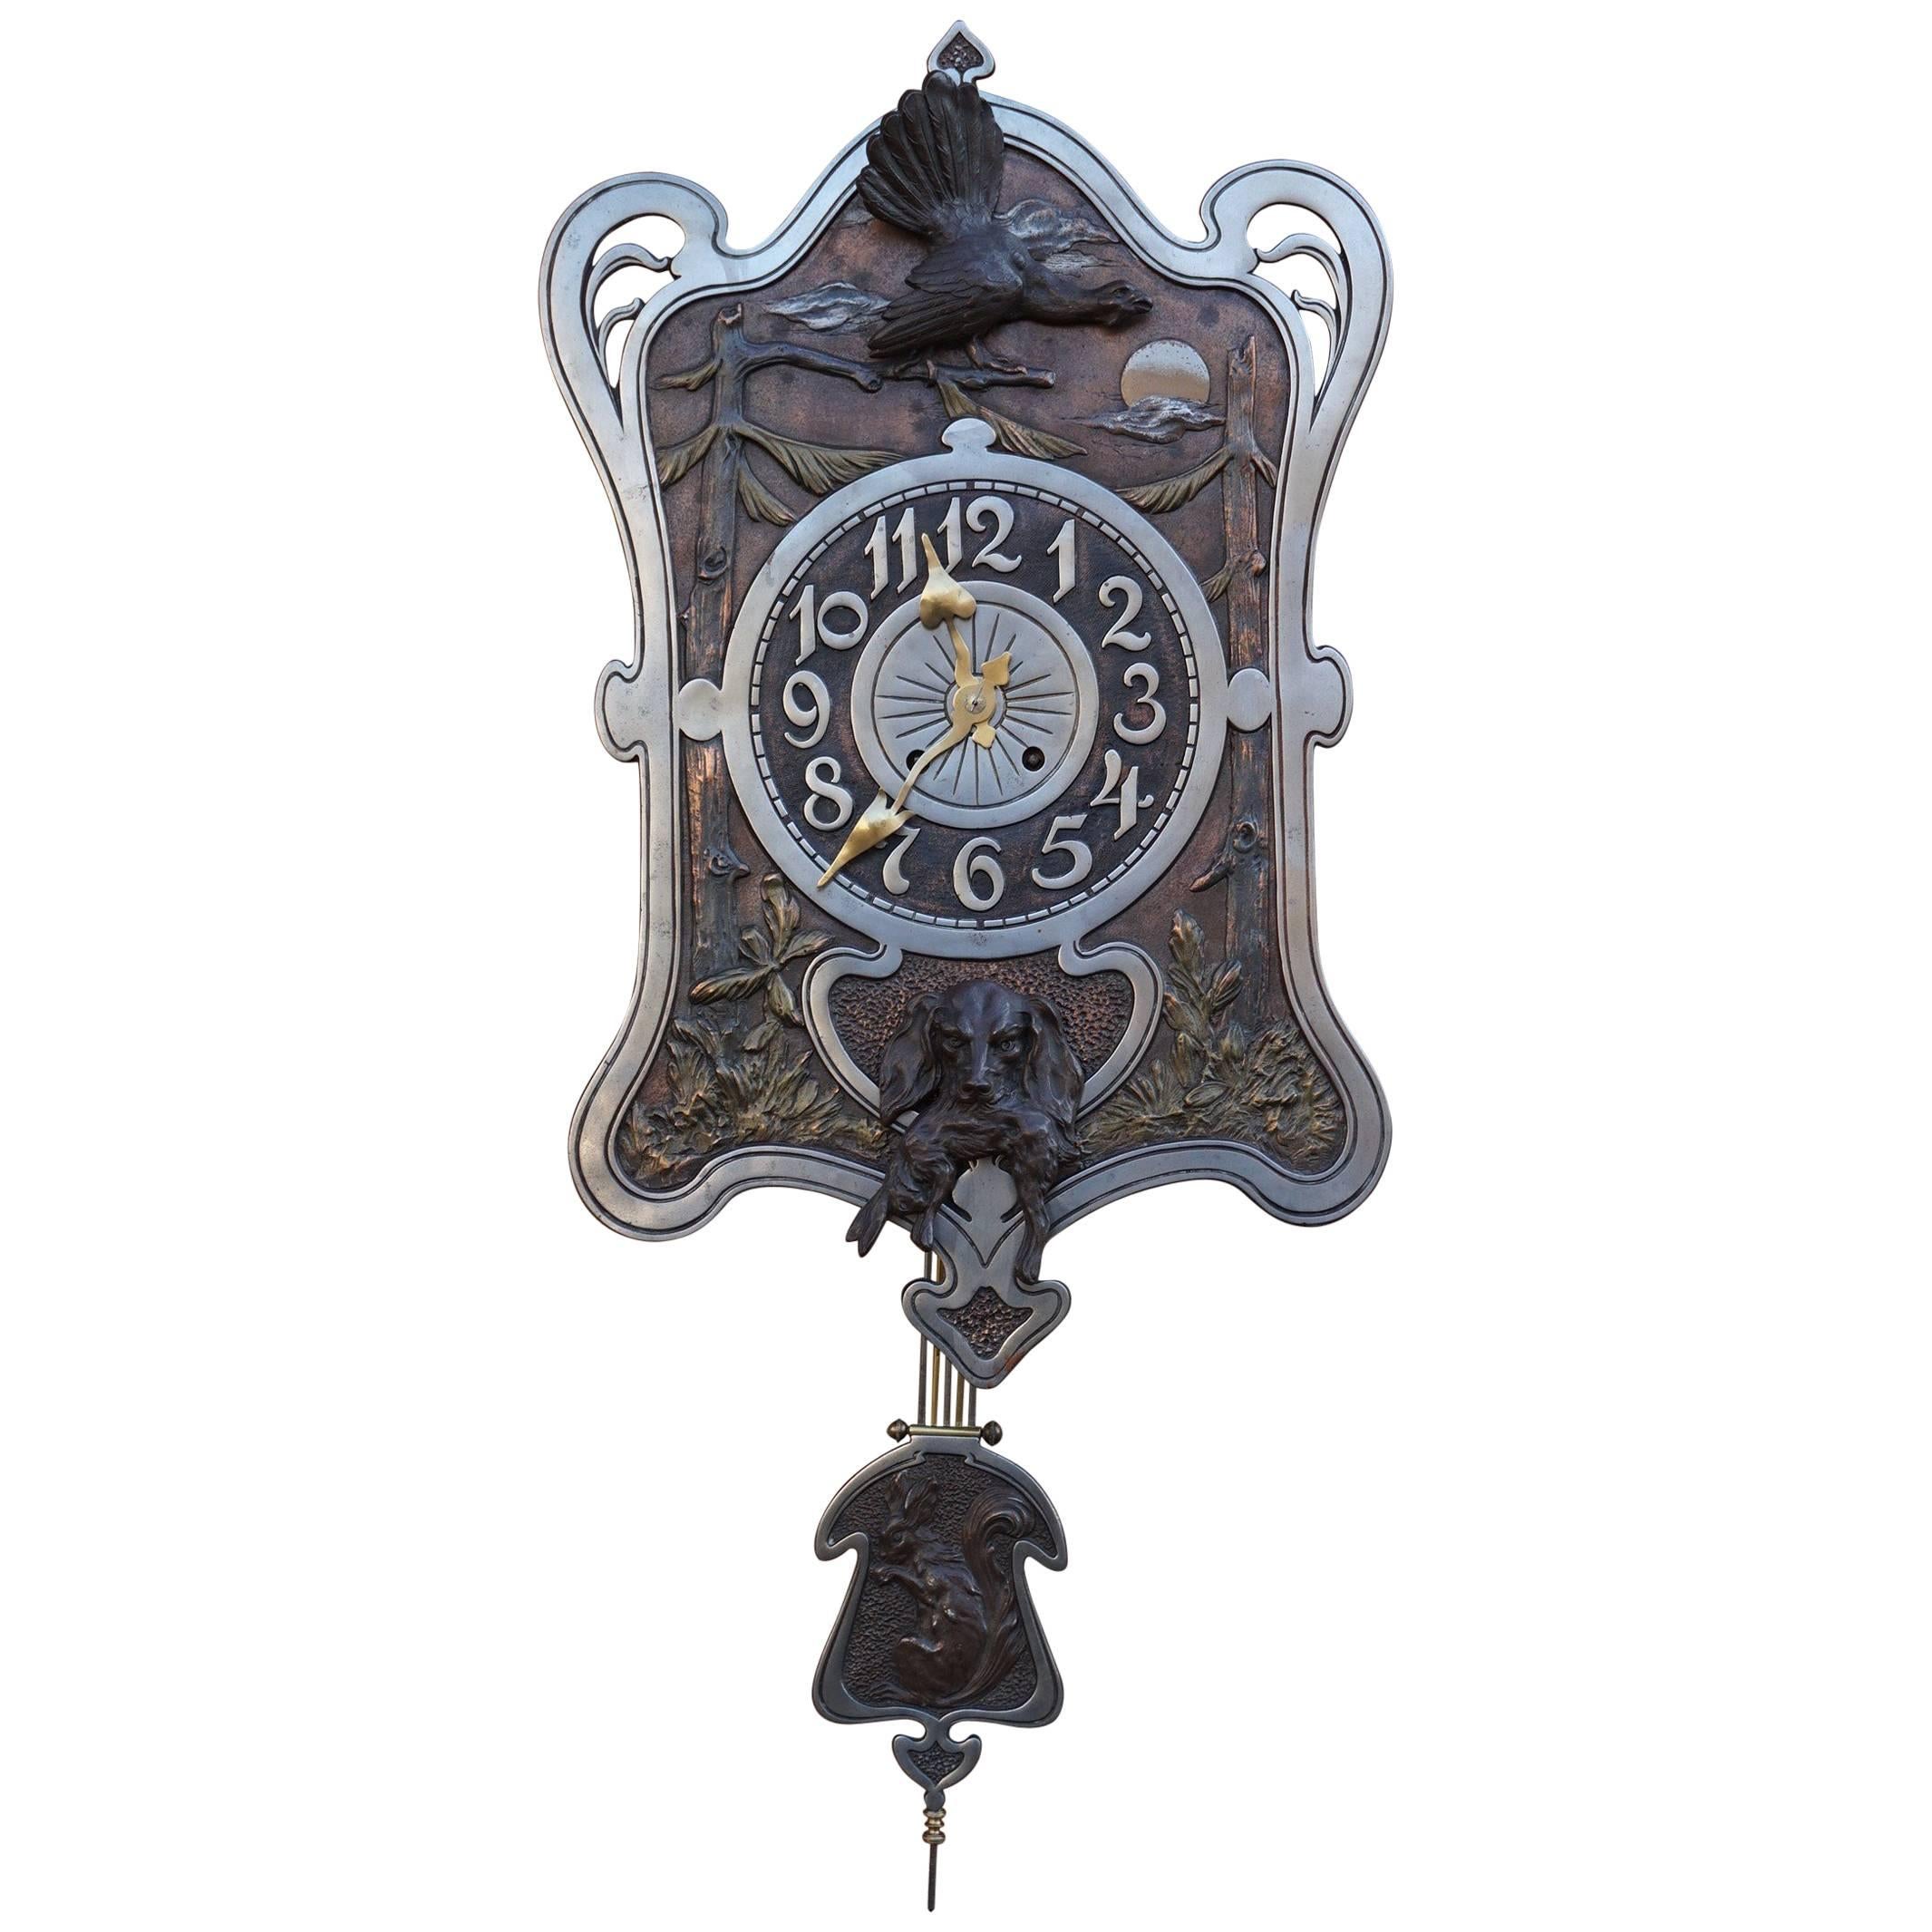 Horloge de chasse Arts and Crafts ancienne avec sculptures de chiens et d'oiseaux en bronze